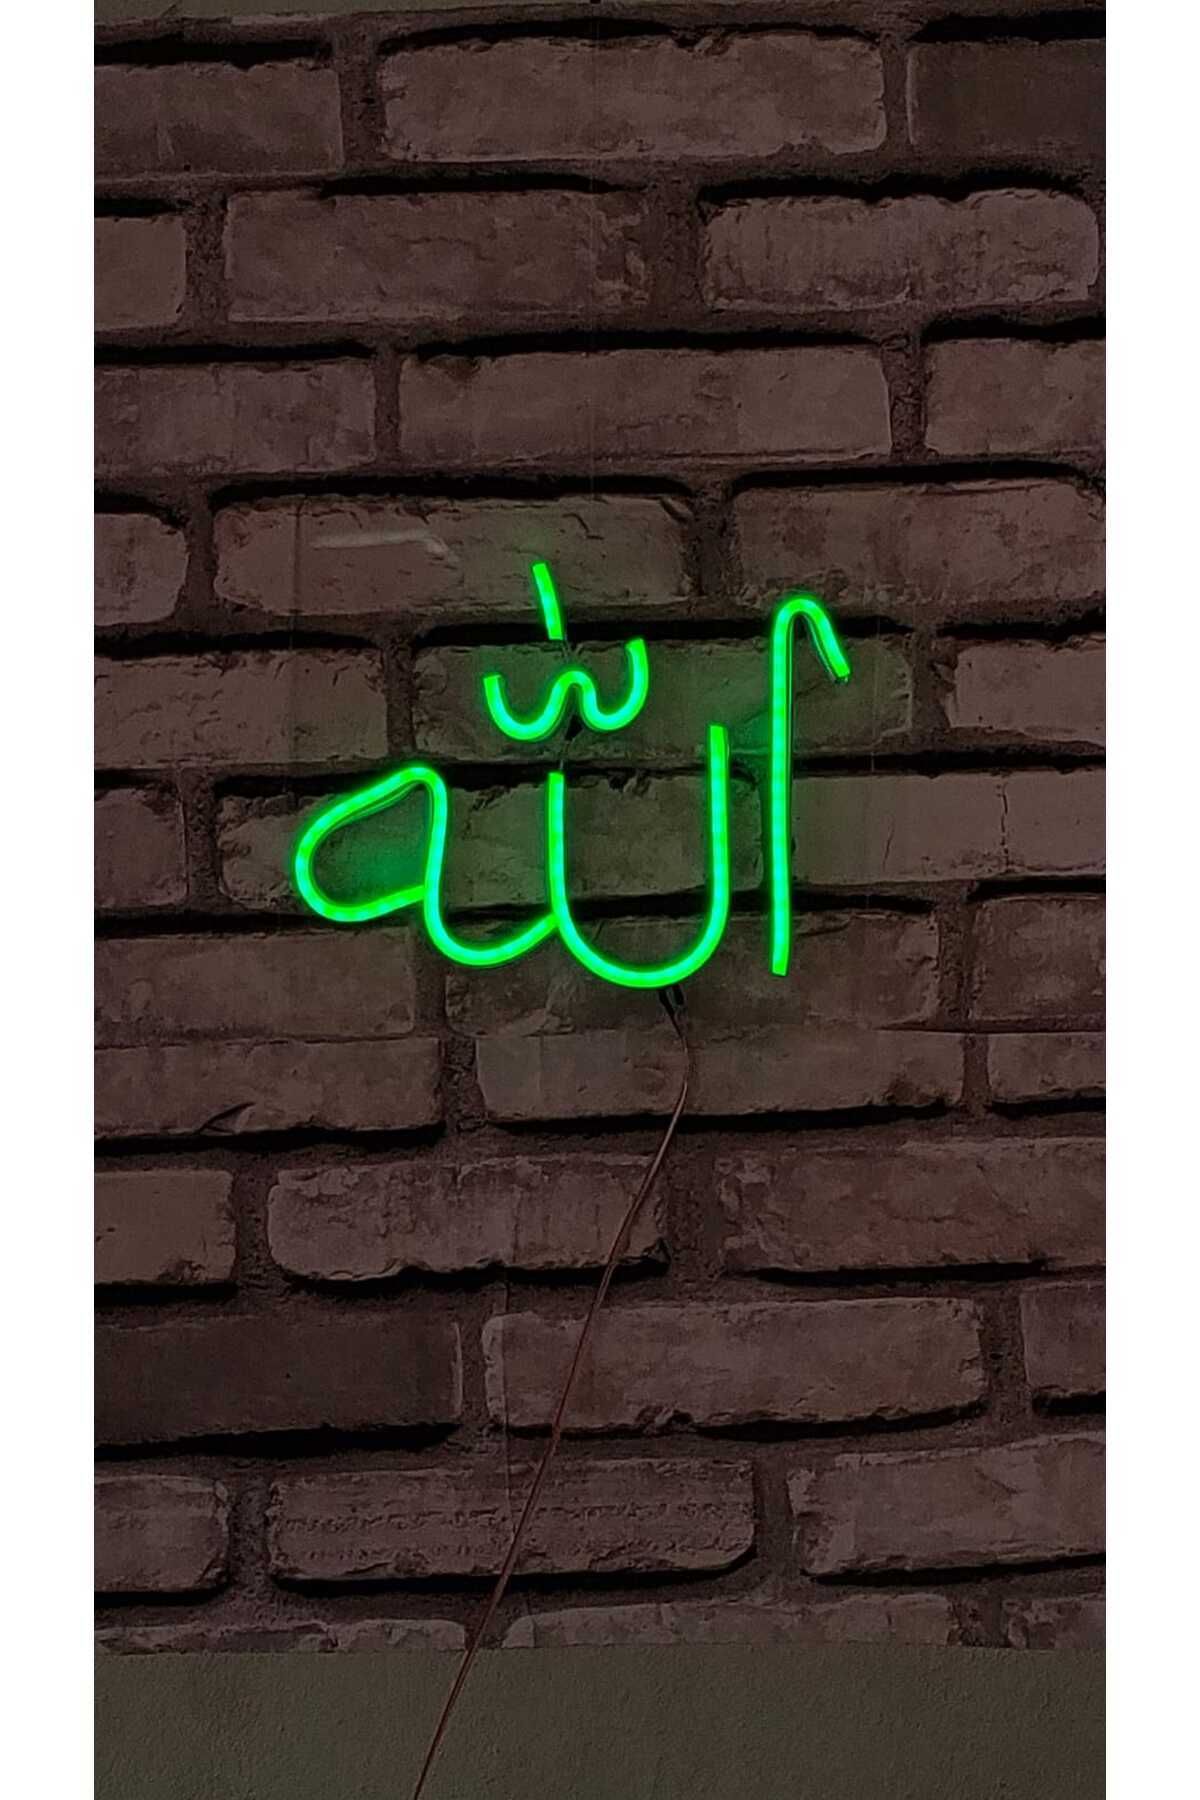 Erdem neon led ALLAH yazısı arapca rafsetullah yazısı neon led dekoratif tasarım kablolu